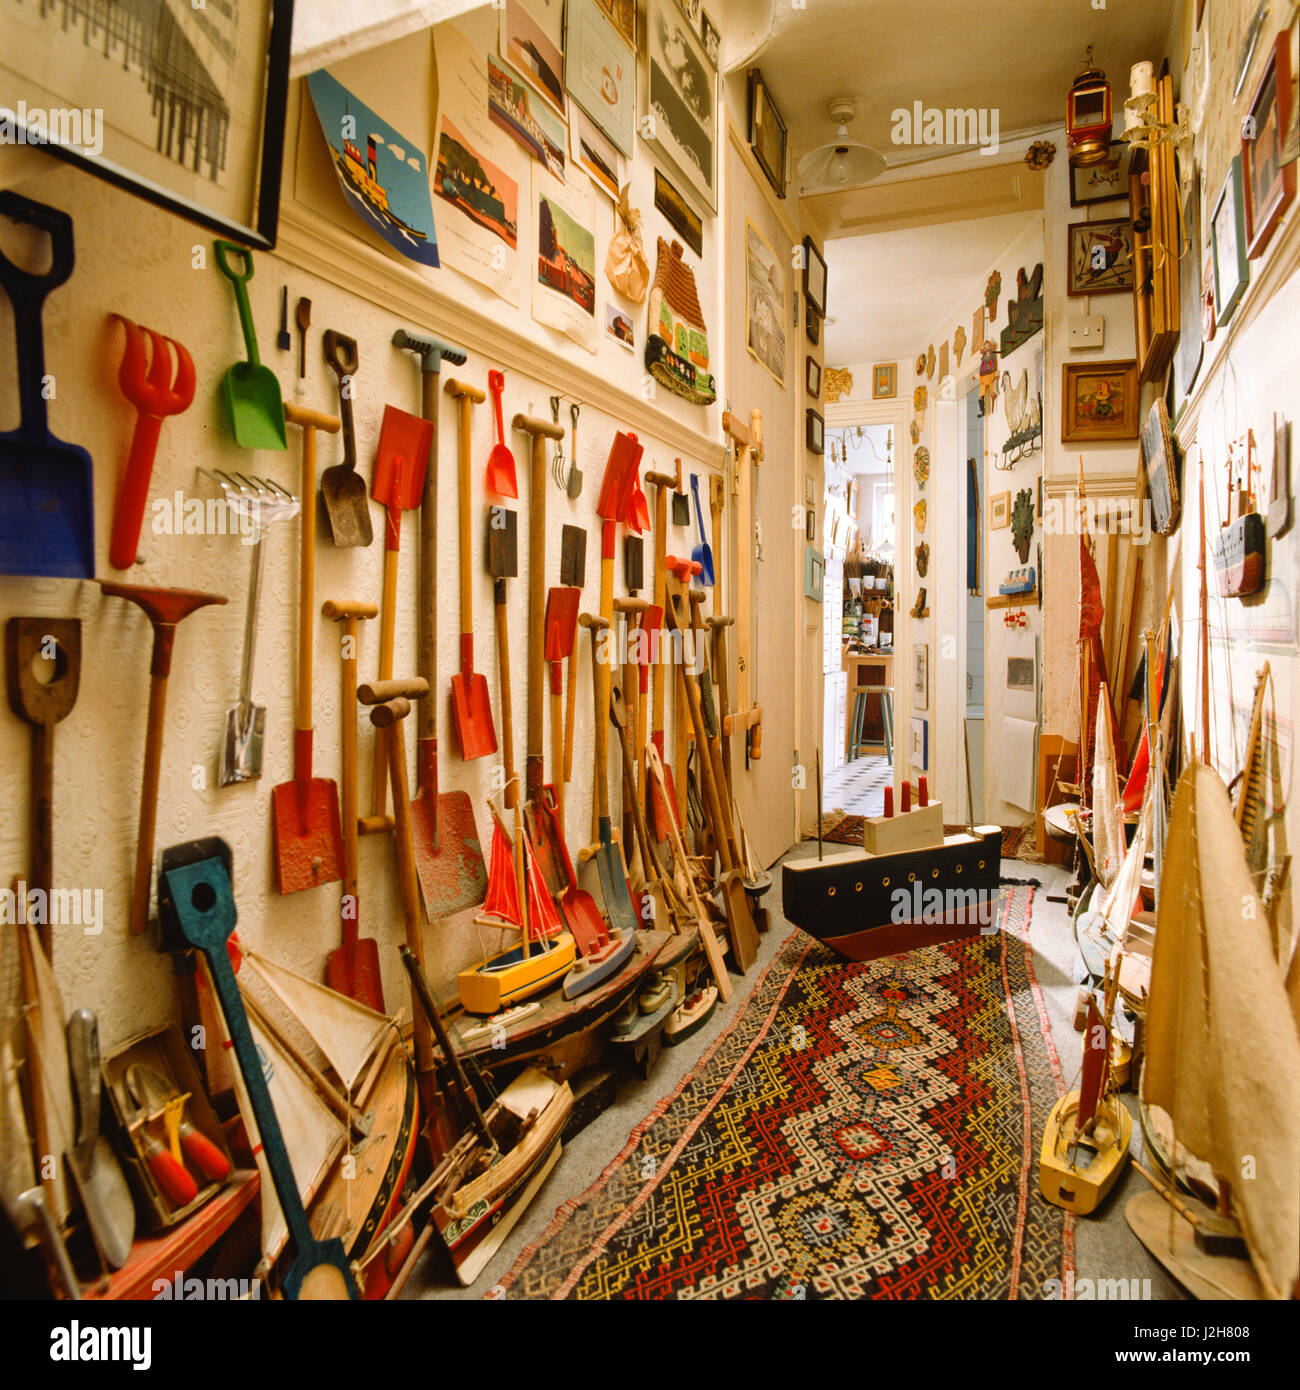 Garden implements hanging in hallway. Stock Photo